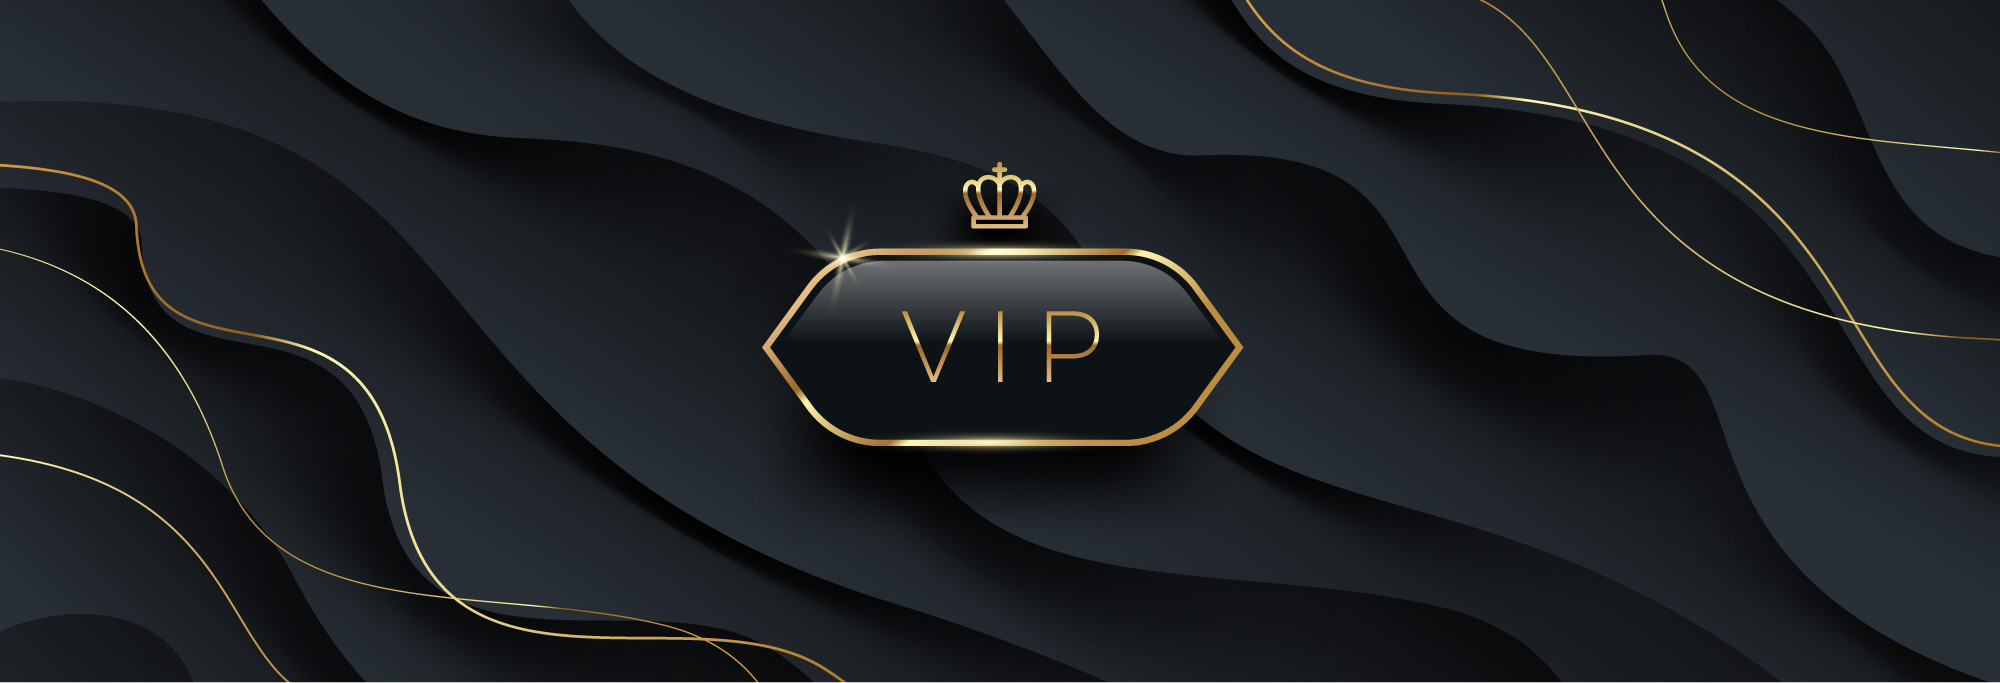 VIP bar-be-club-membership